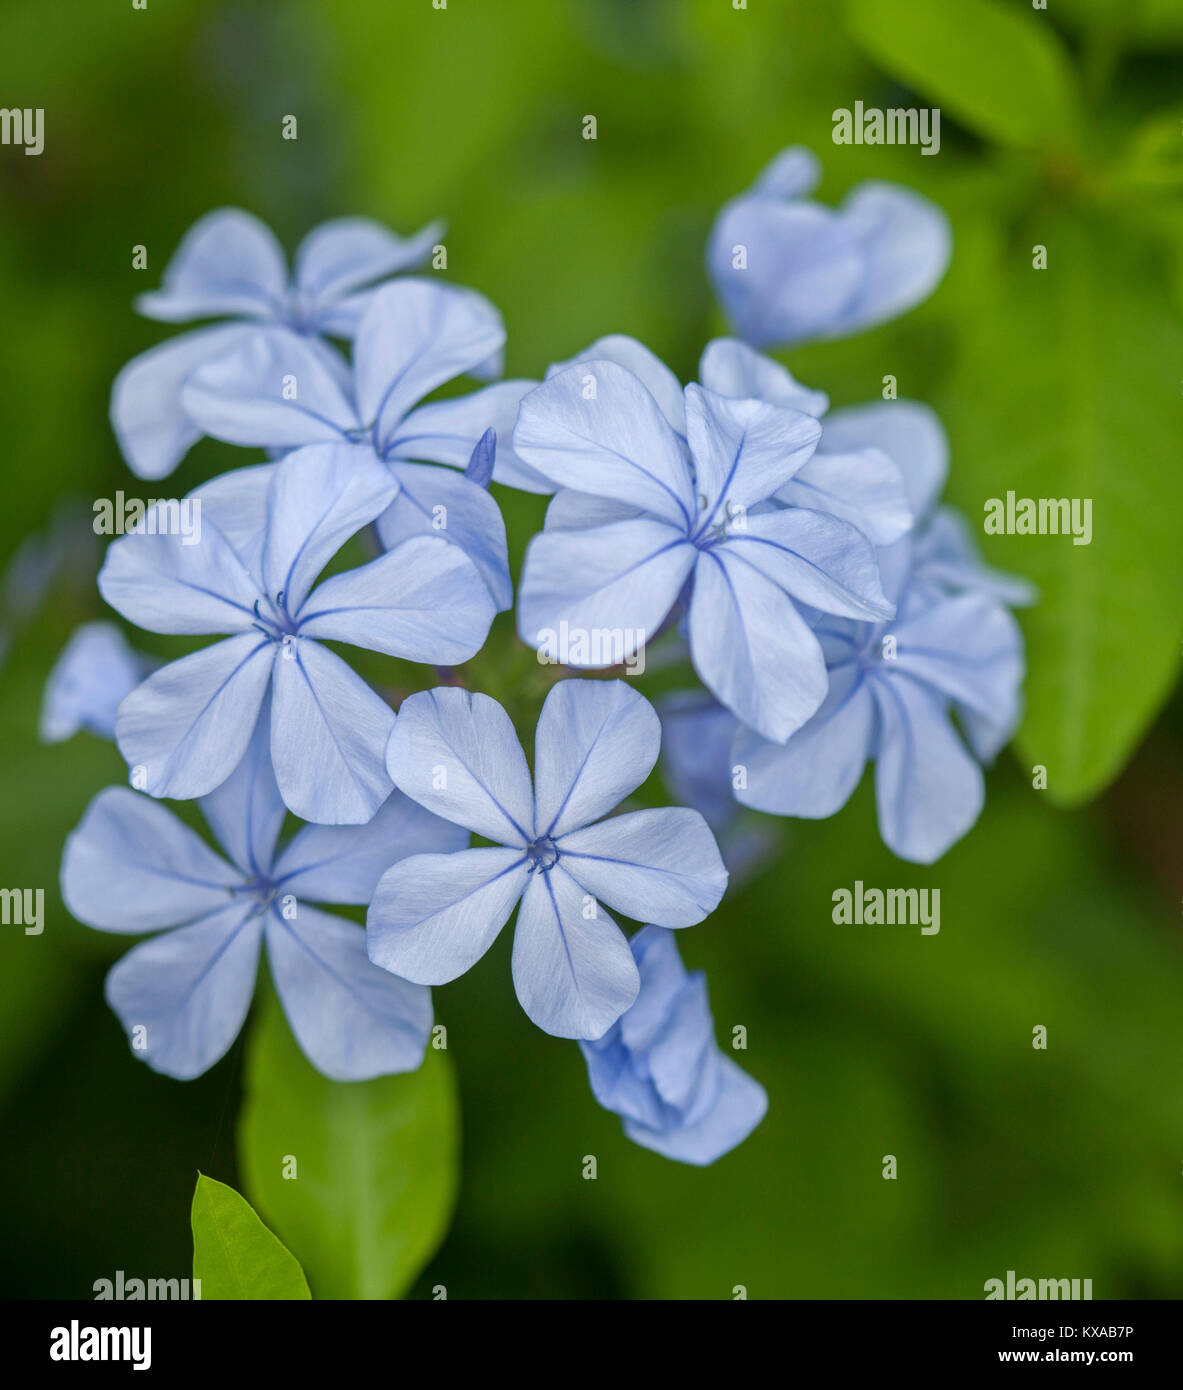 Racimo de flores de color azul pálido de Plumbago auriculata, jardín arbusto siempreverde, contra el telón de fondo de follaje verde brillante Foto de stock